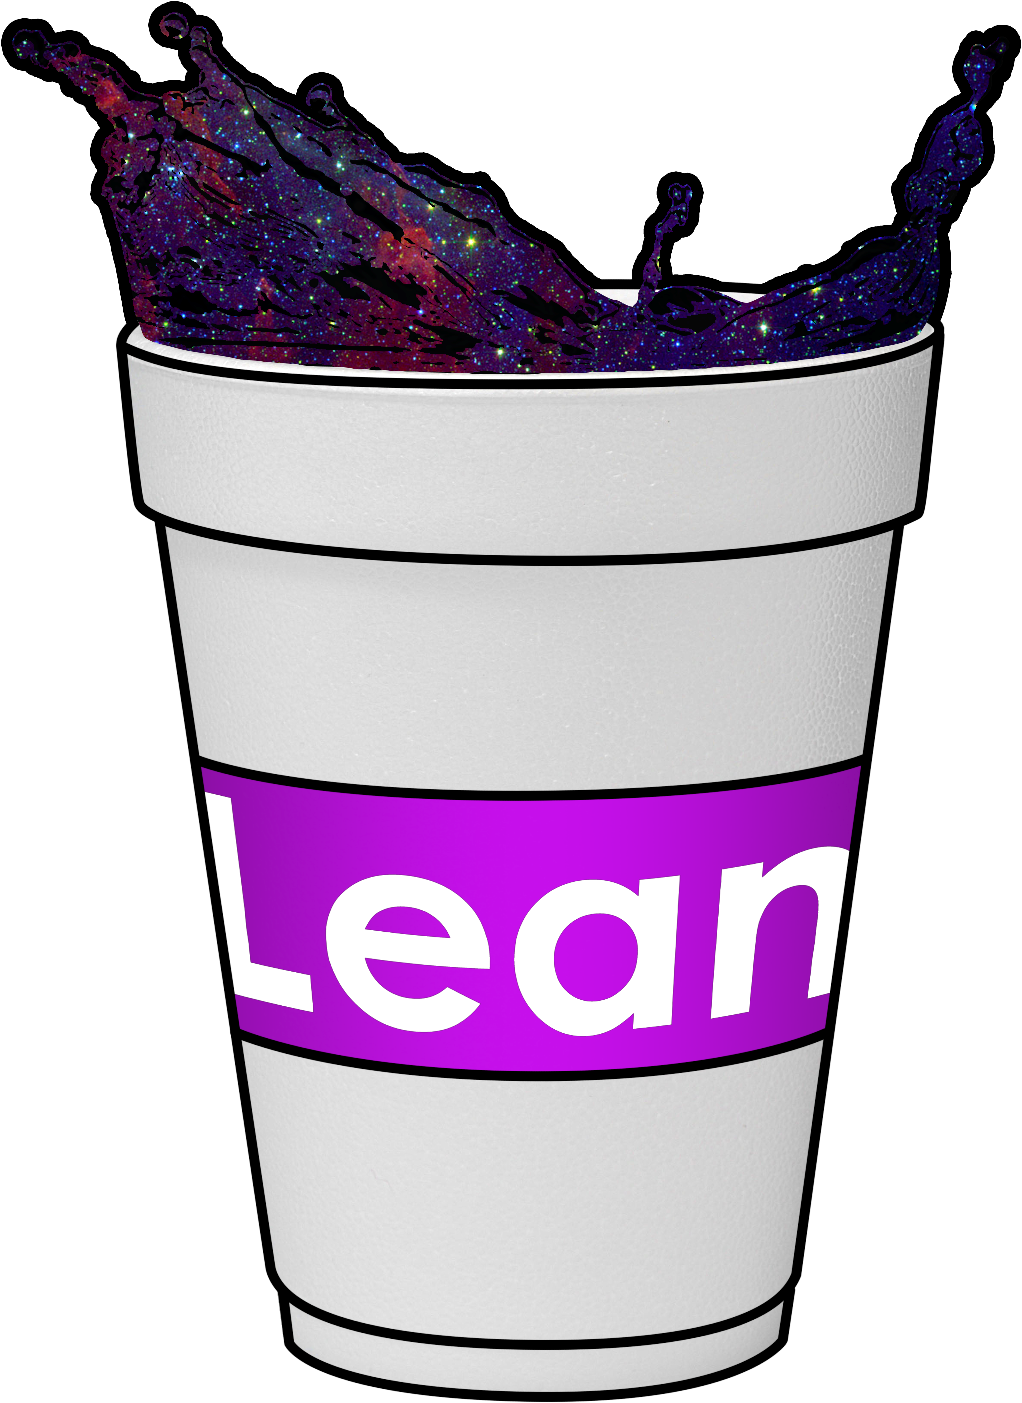 Cup Full Of Lean, Pure Codeine - Copo De Lean Png (2000x2000)